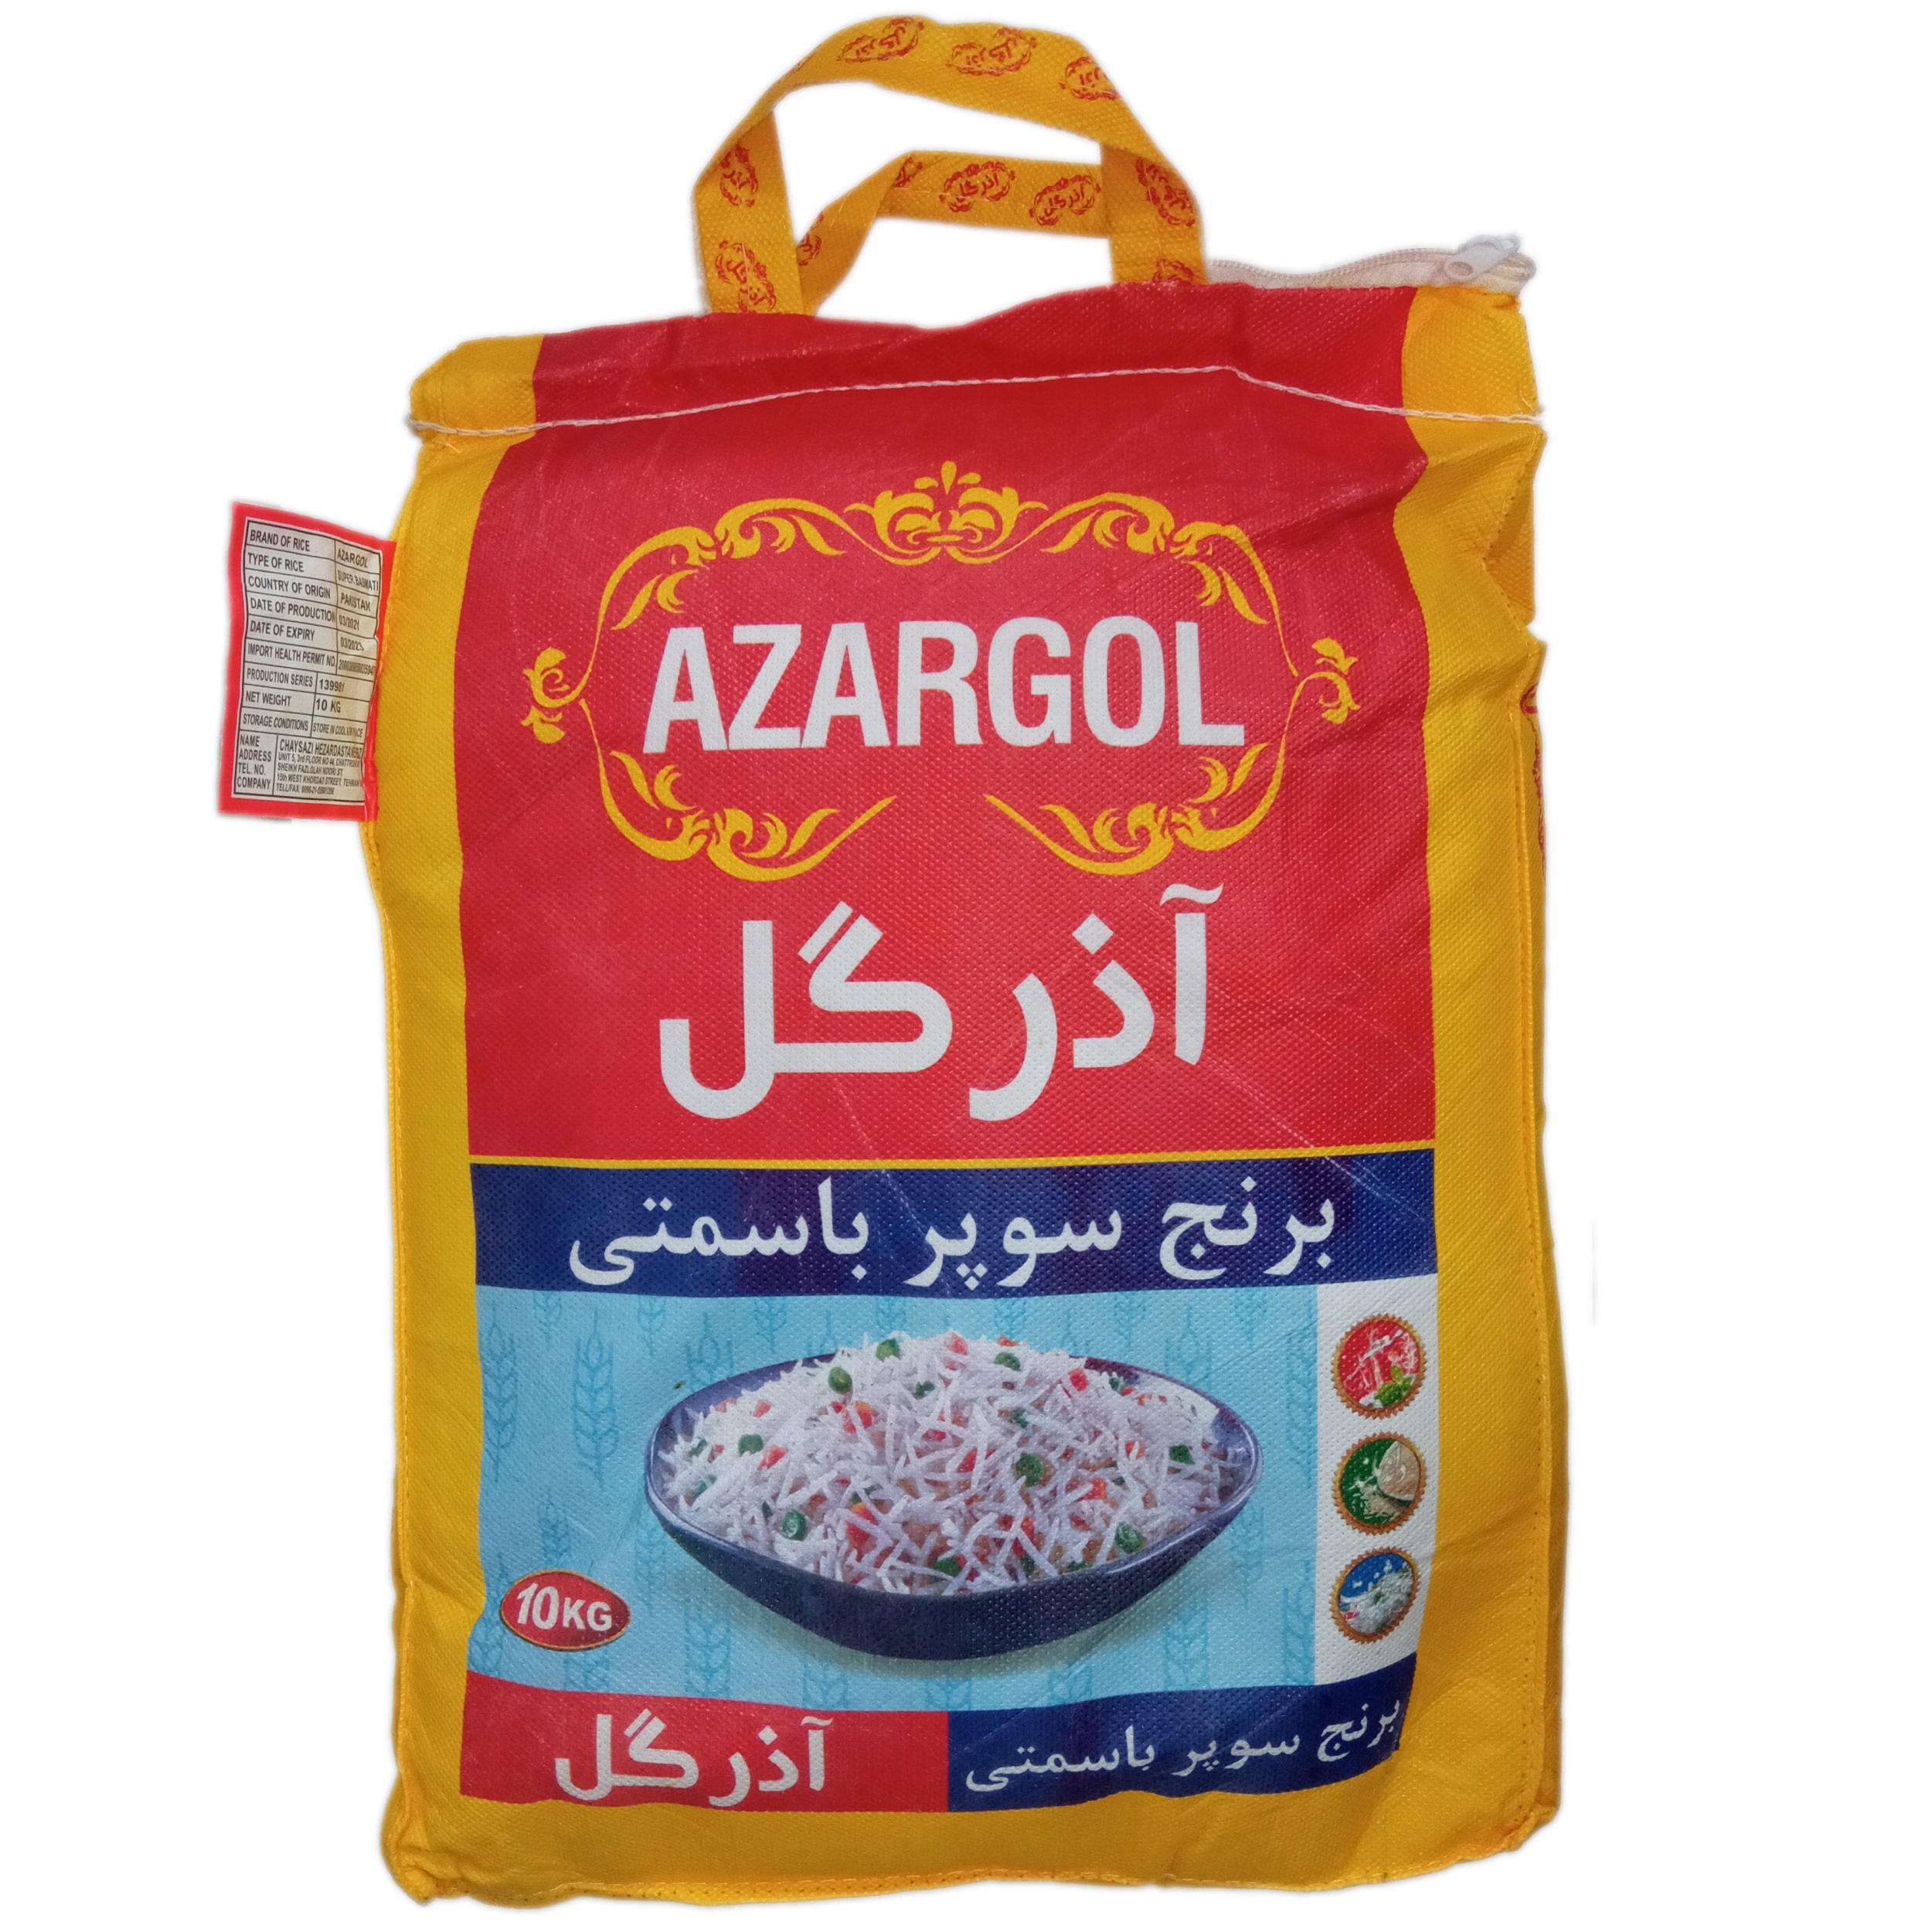 نکته خرید - قیمت روز برنج پاکستانی سوپرباسماتی آذرگل 10 کیلوگرم خرید